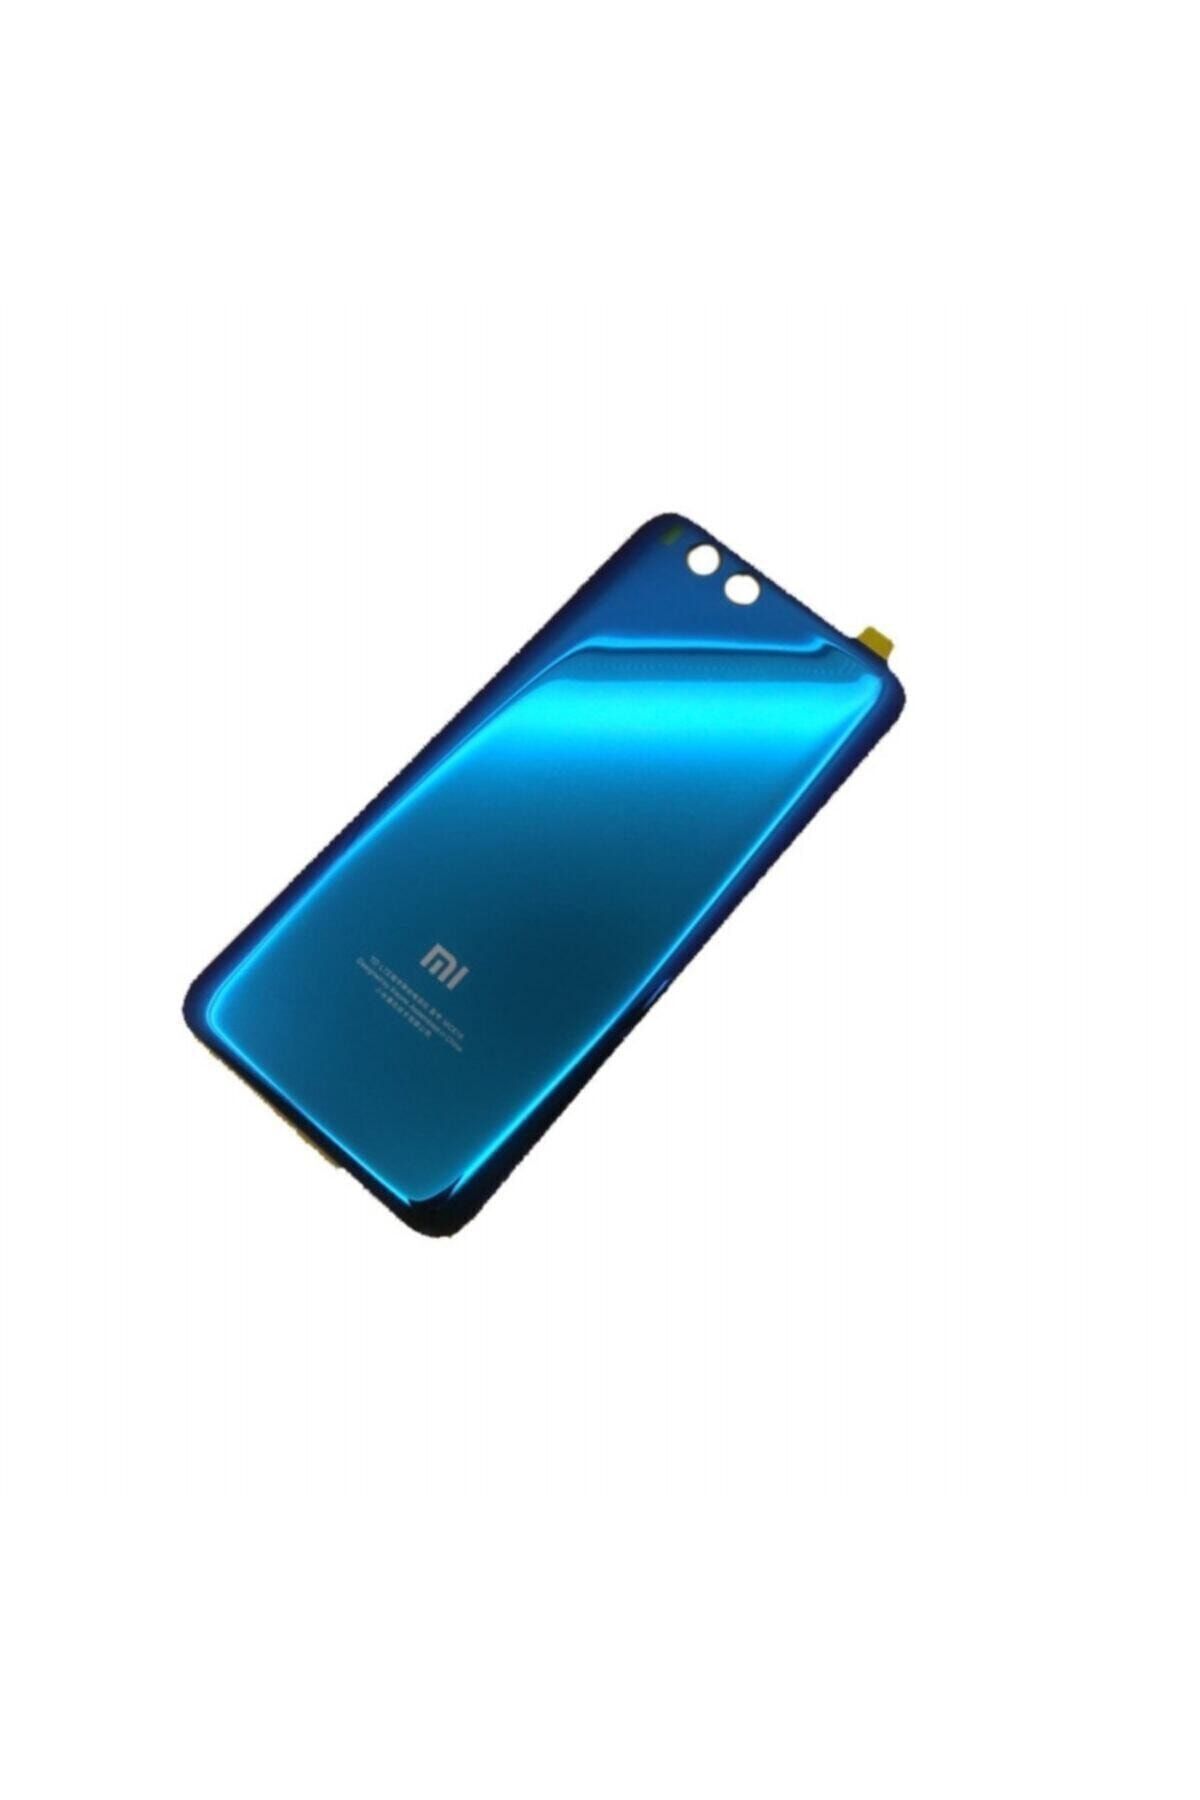 ceparac Xiaomi Mi 6 Arka Pil Kapak Mavi (açıklamayı Okuyunuz)